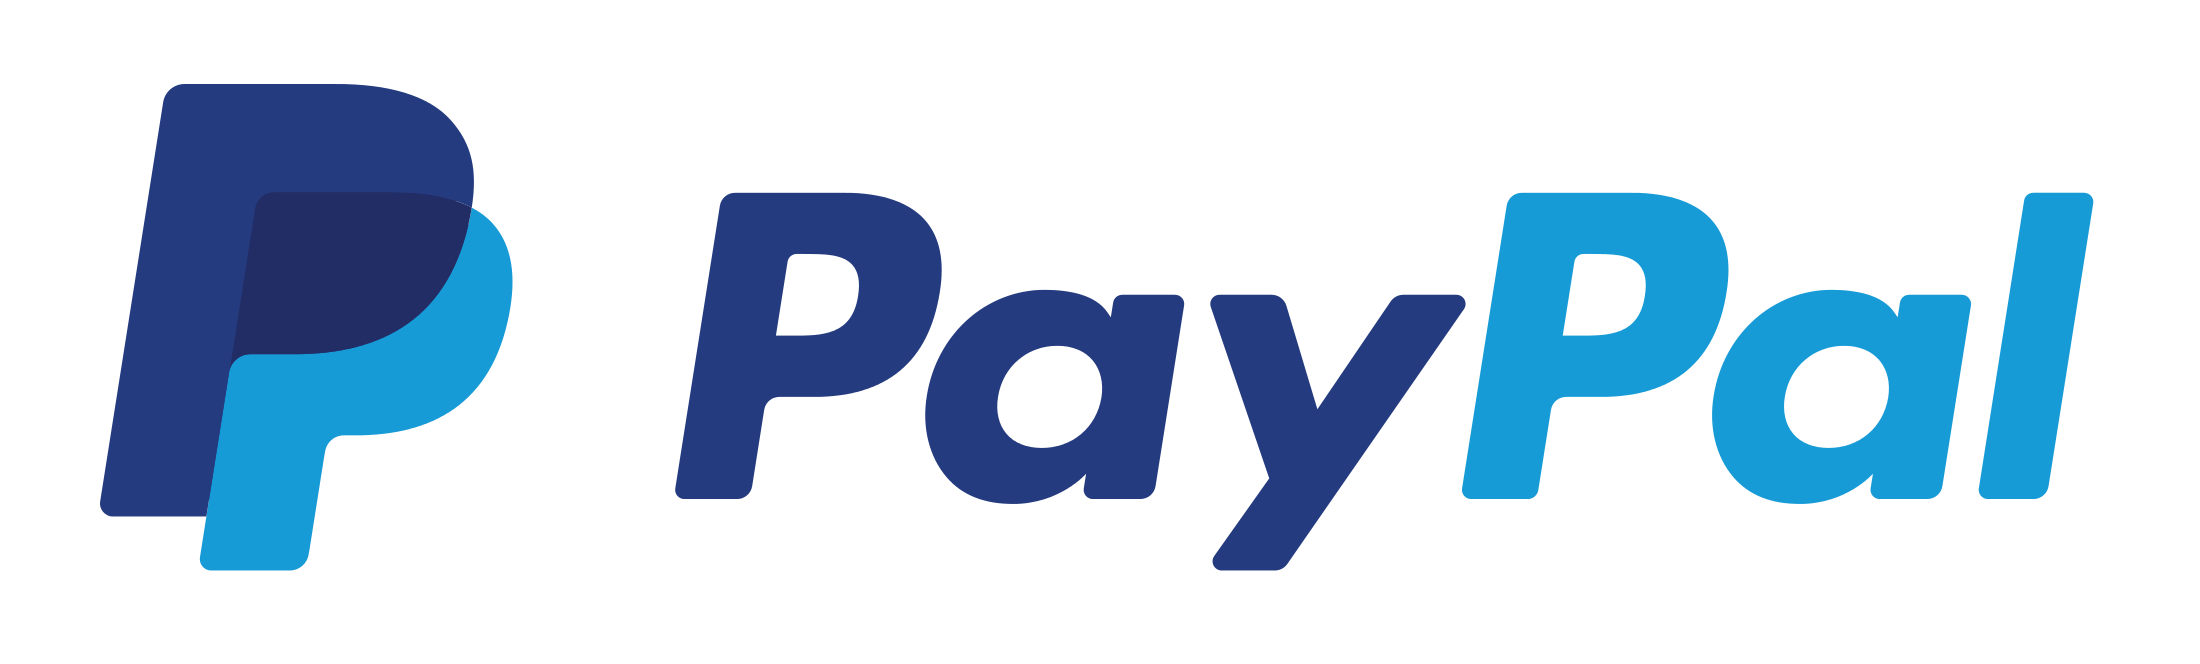 Ab sofort auch mit Paypal bezahlen